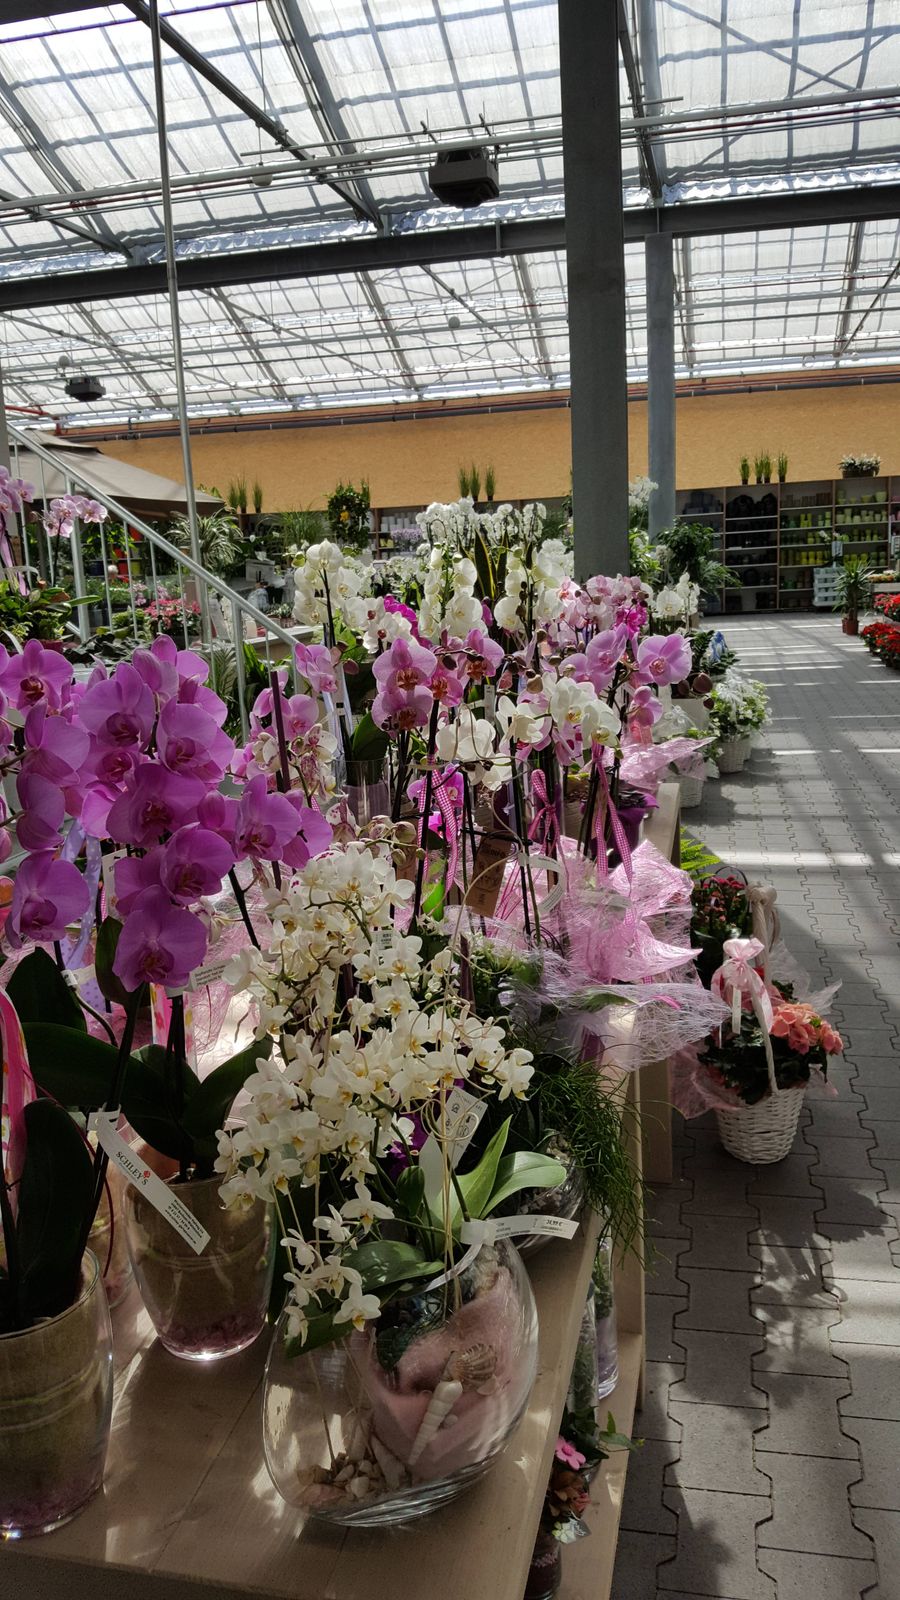 Gartencenter Schley's Blumenparadies in Bochum ⇒ in Das Örtliche